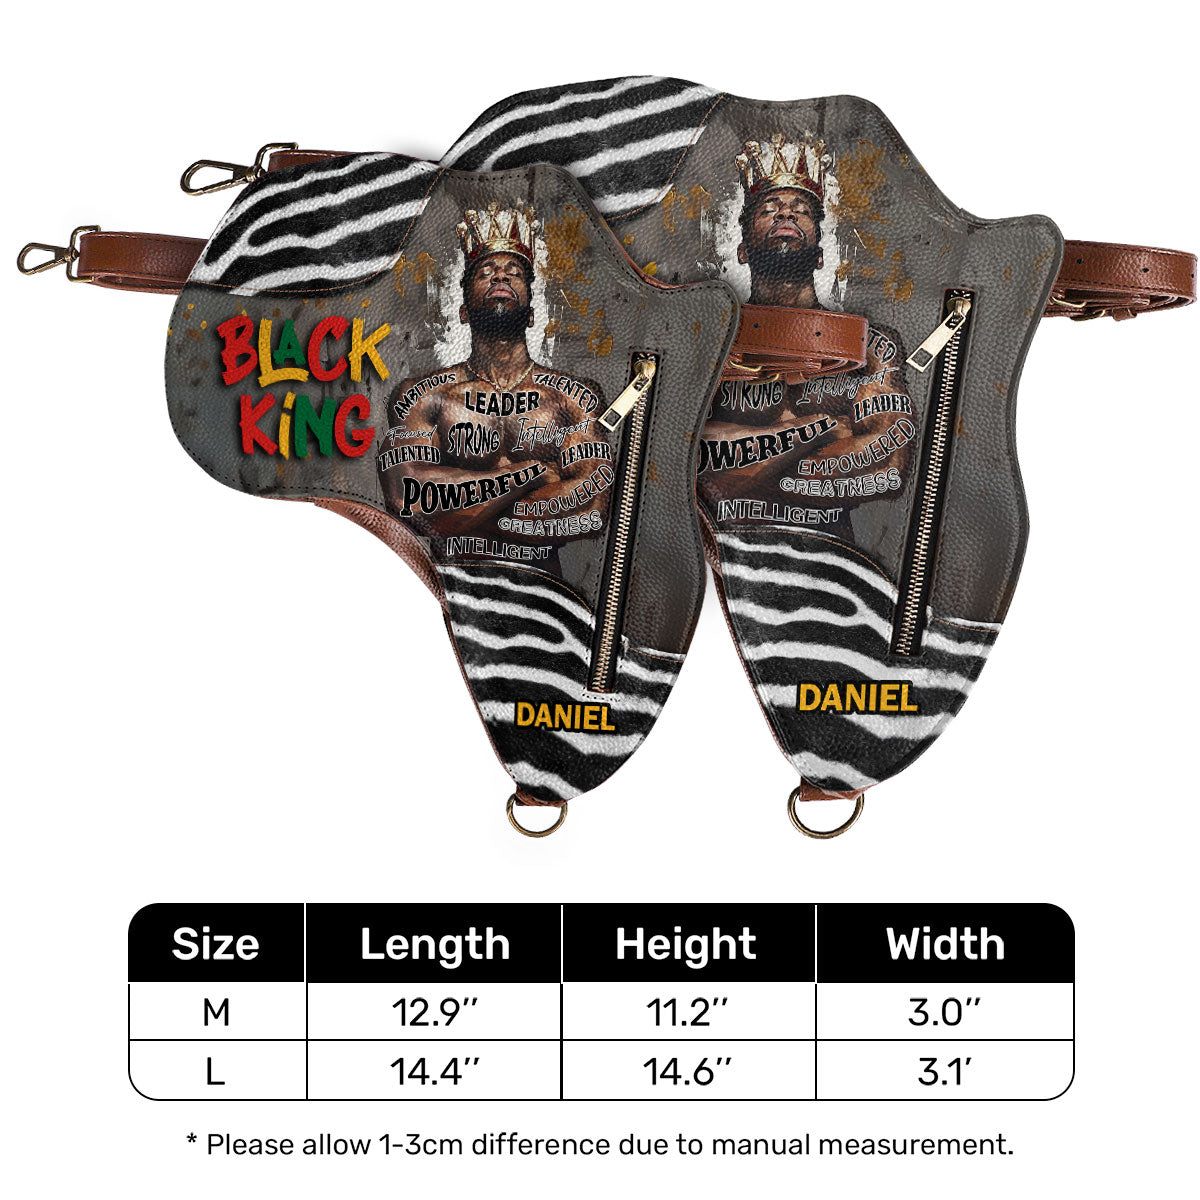 Black King/Queen - Personalized Africa Bag SBABT60